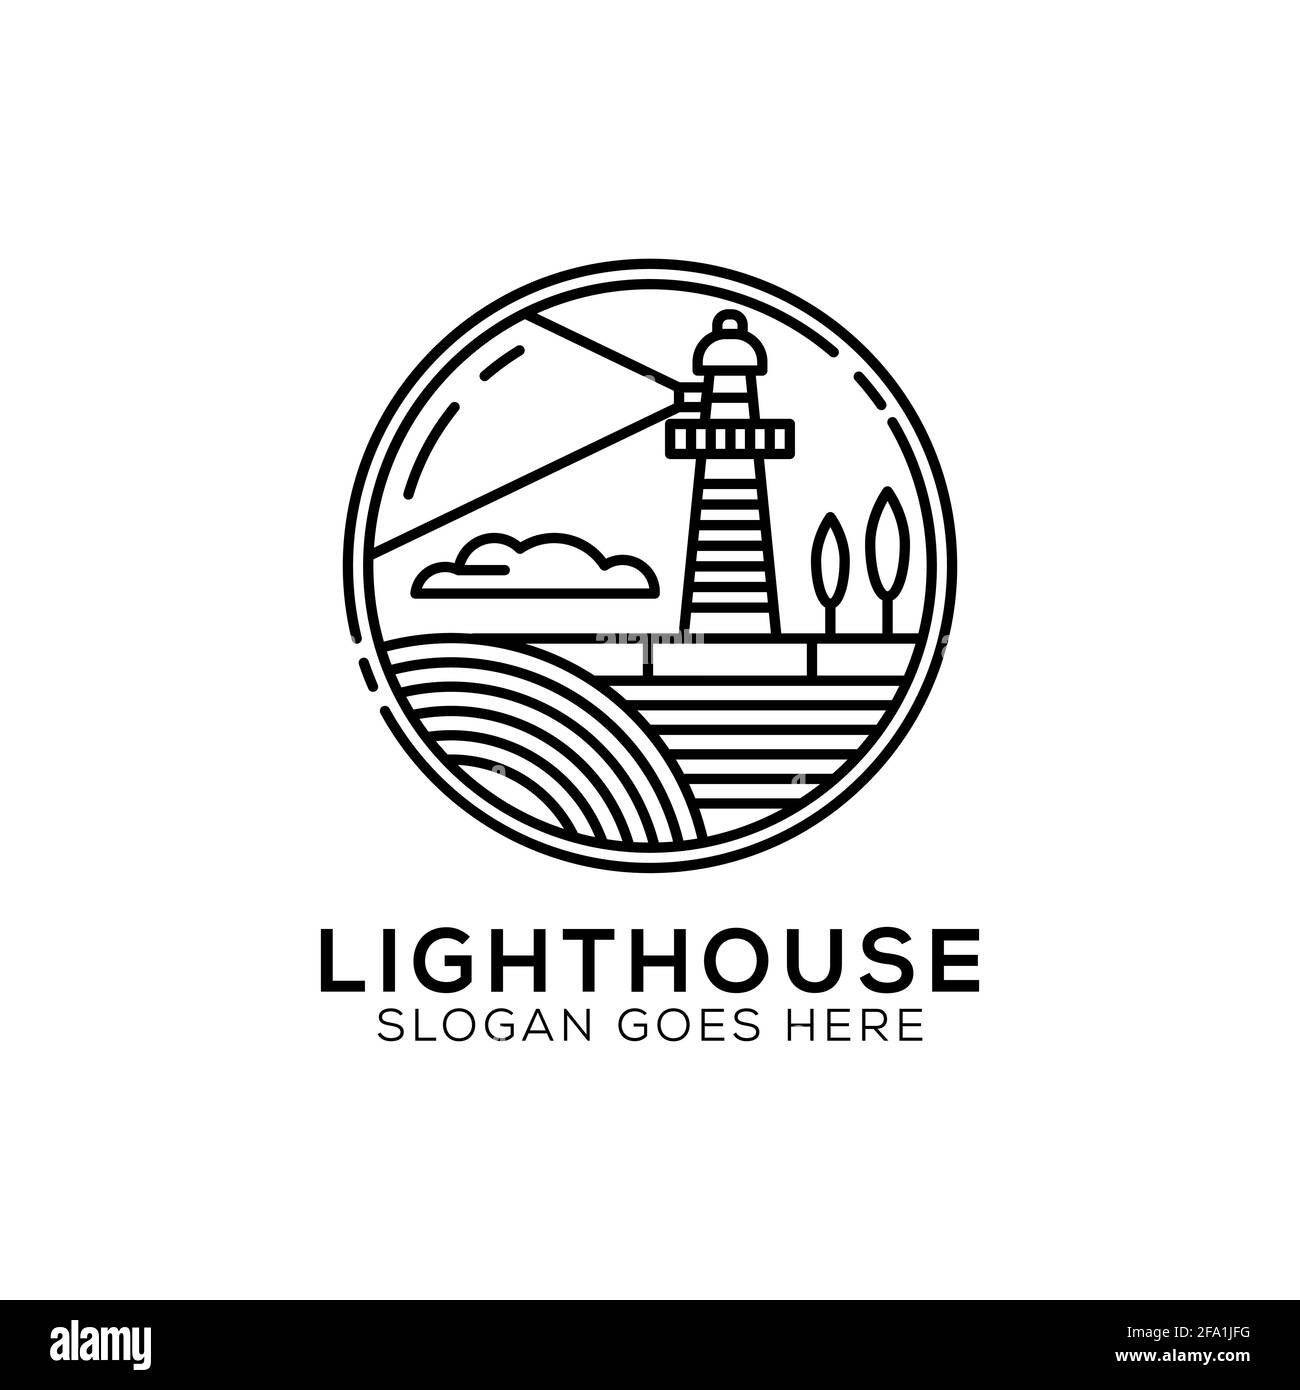 Outline Light house logo design, lighthouse icon vector illustration line art style Stock Vector